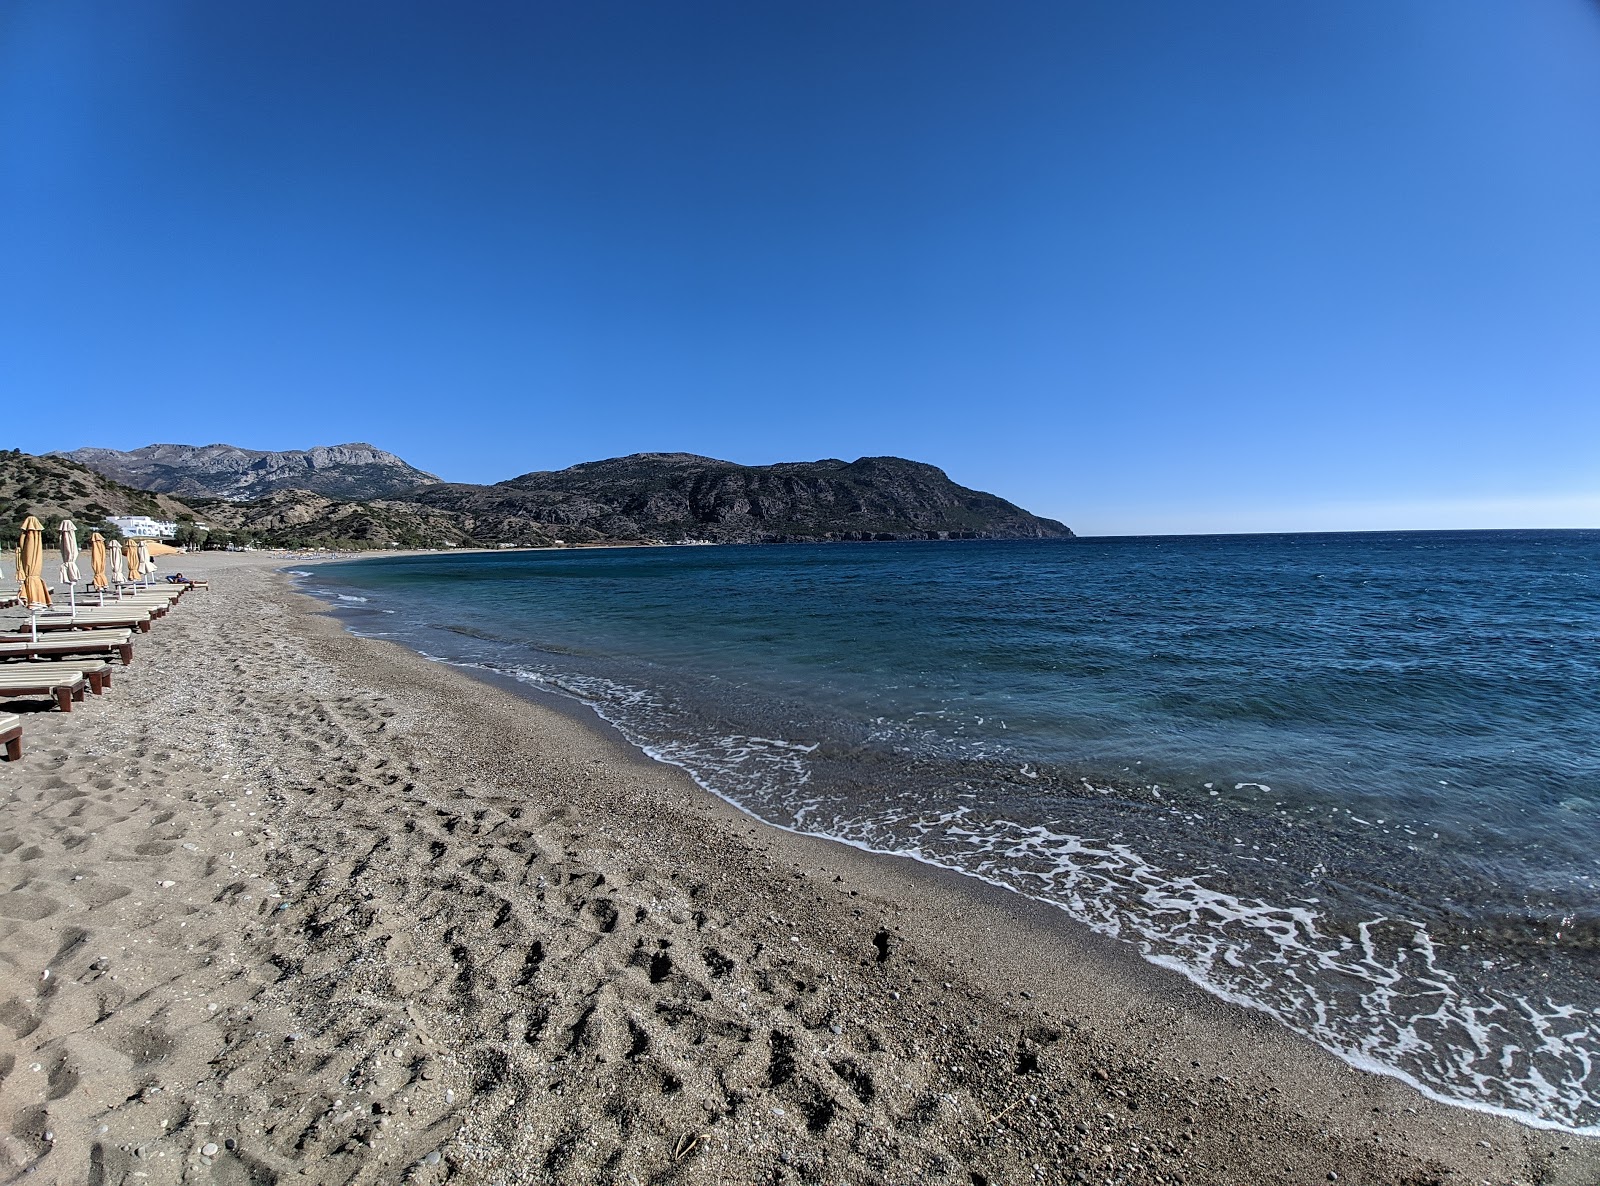 Zdjęcie Limniatis beach - popularne miejsce wśród znawców relaksu